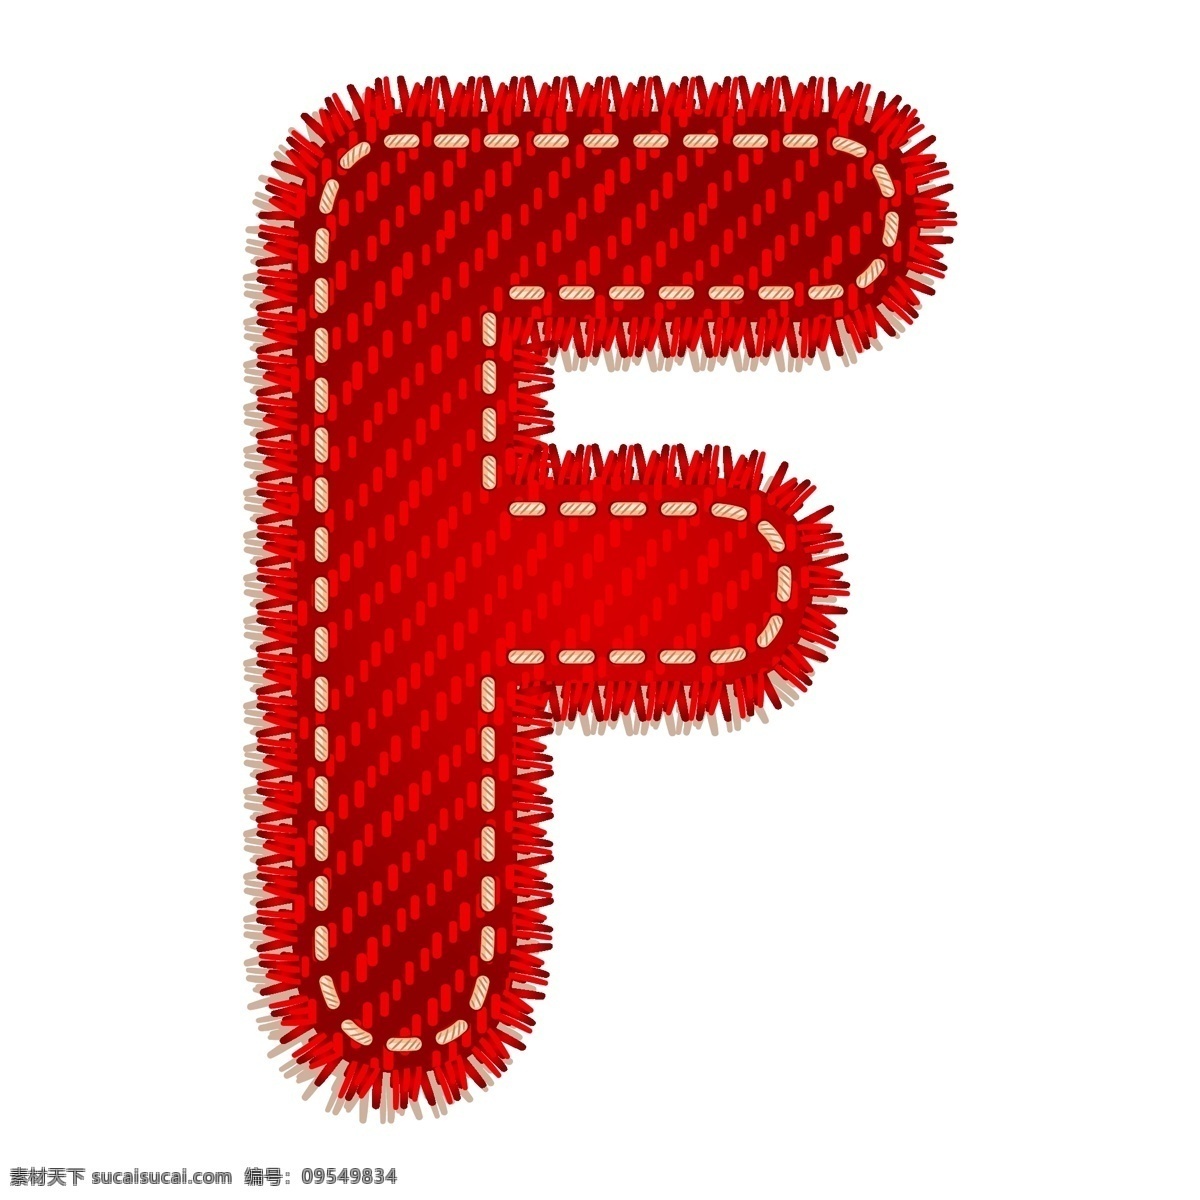 红色字母f 红色 字母 卡通字母 卡通图案 节日素材 f 书画文字 文化艺术 矢量素材 白色